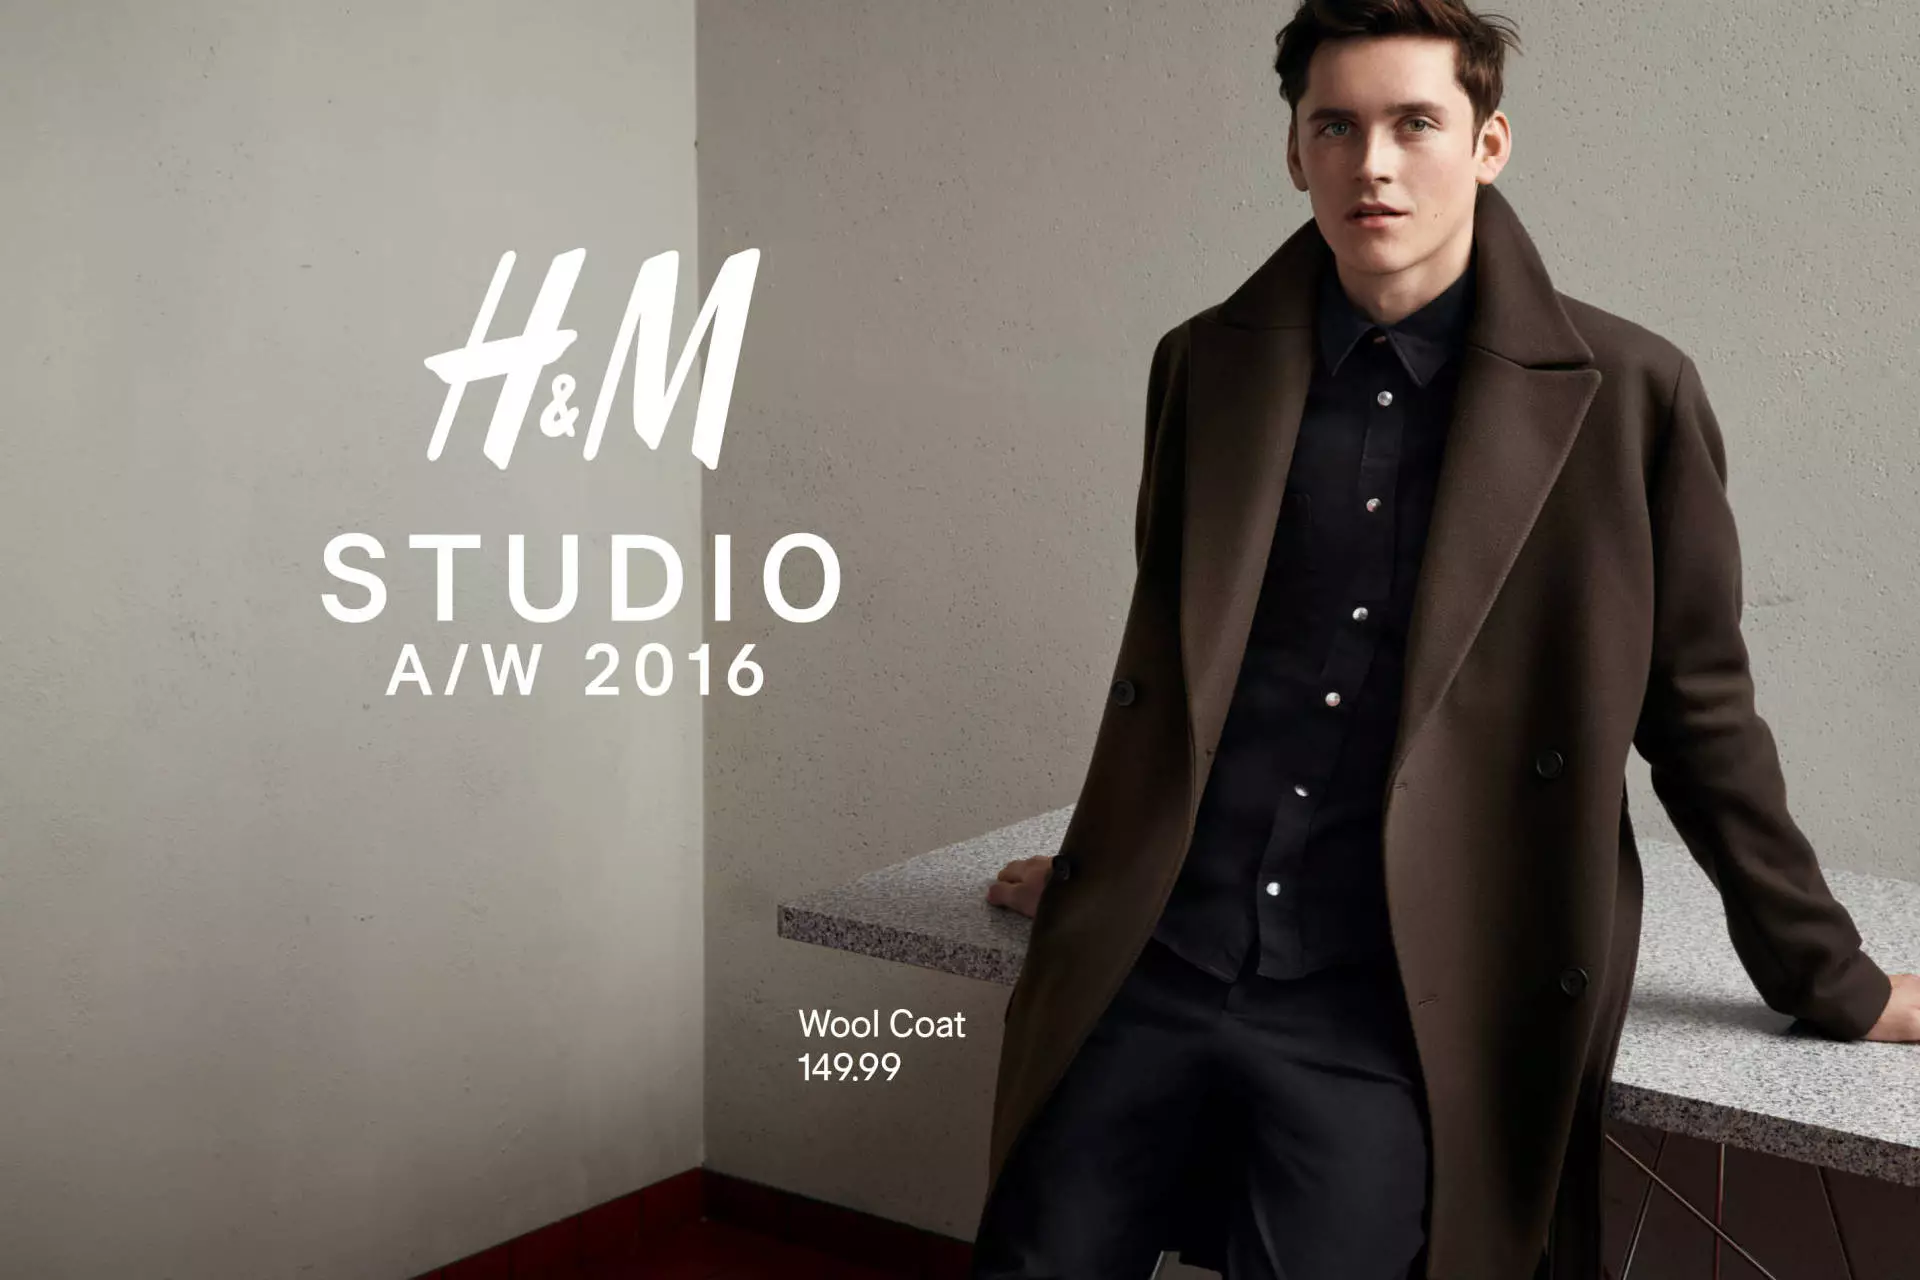 H&M Studio A/W 2016